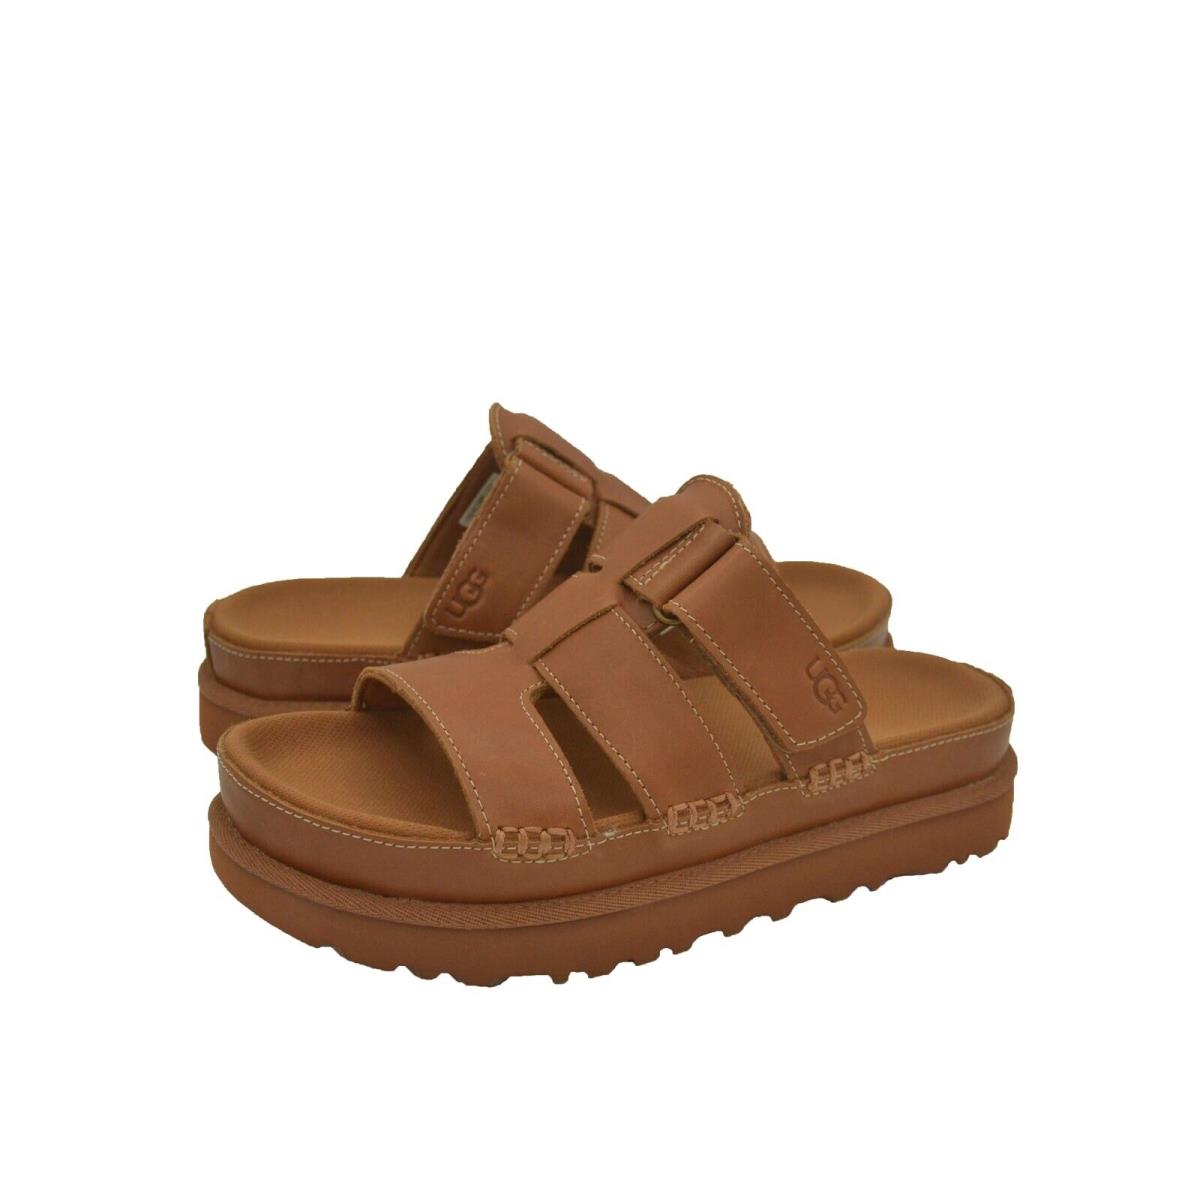 Women`s Shoes Ugg Goldenstar Slide Leather Sandals 1154652 Tan - Brown